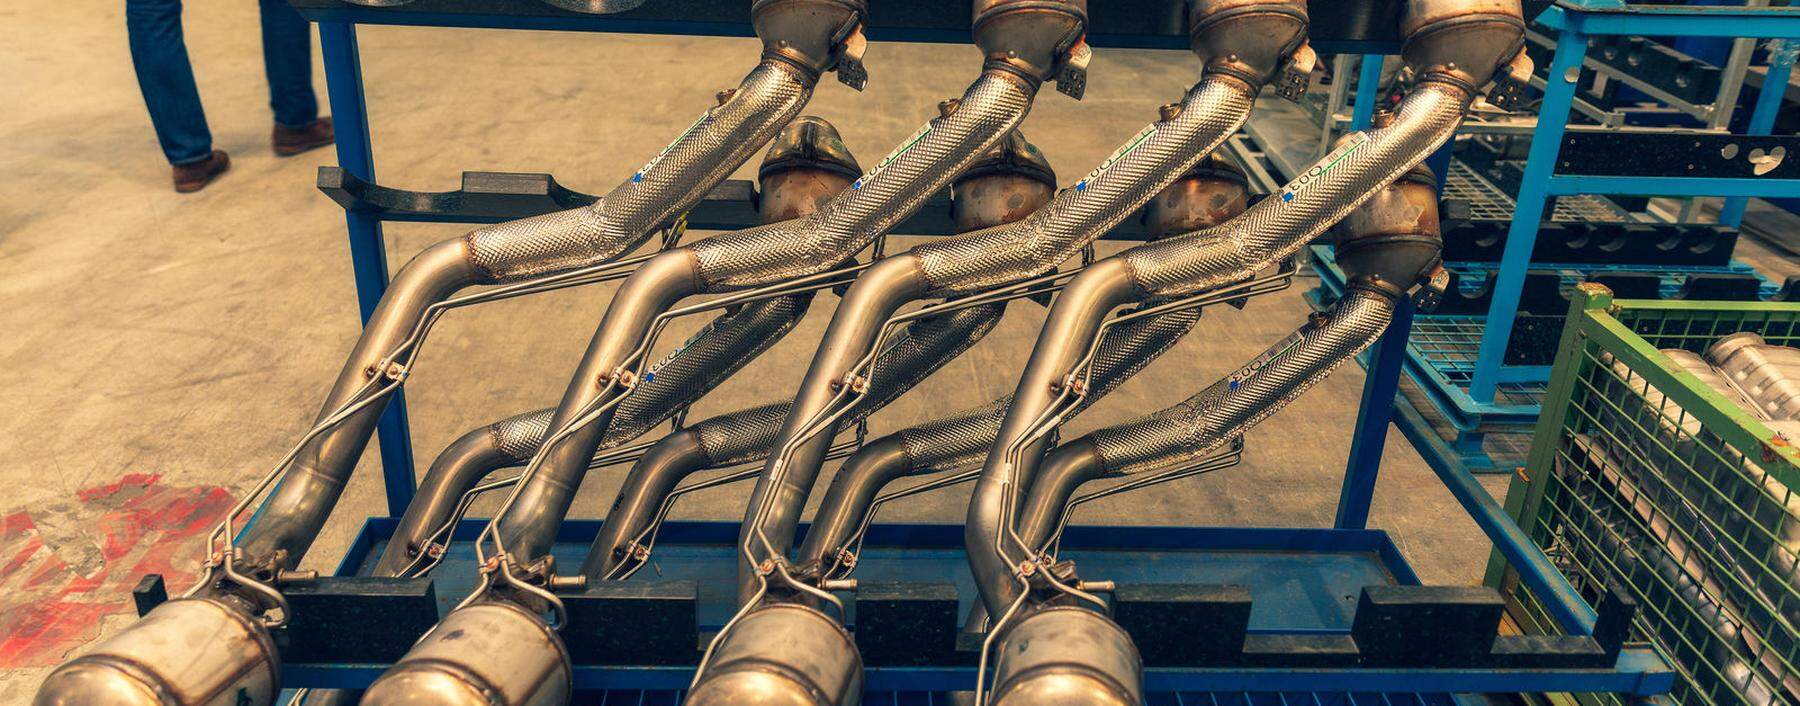 Metallverarbeitung bei Remus: Kunstfertig gebogene Rohre für noble Kunden wie Bentley und McLaren.